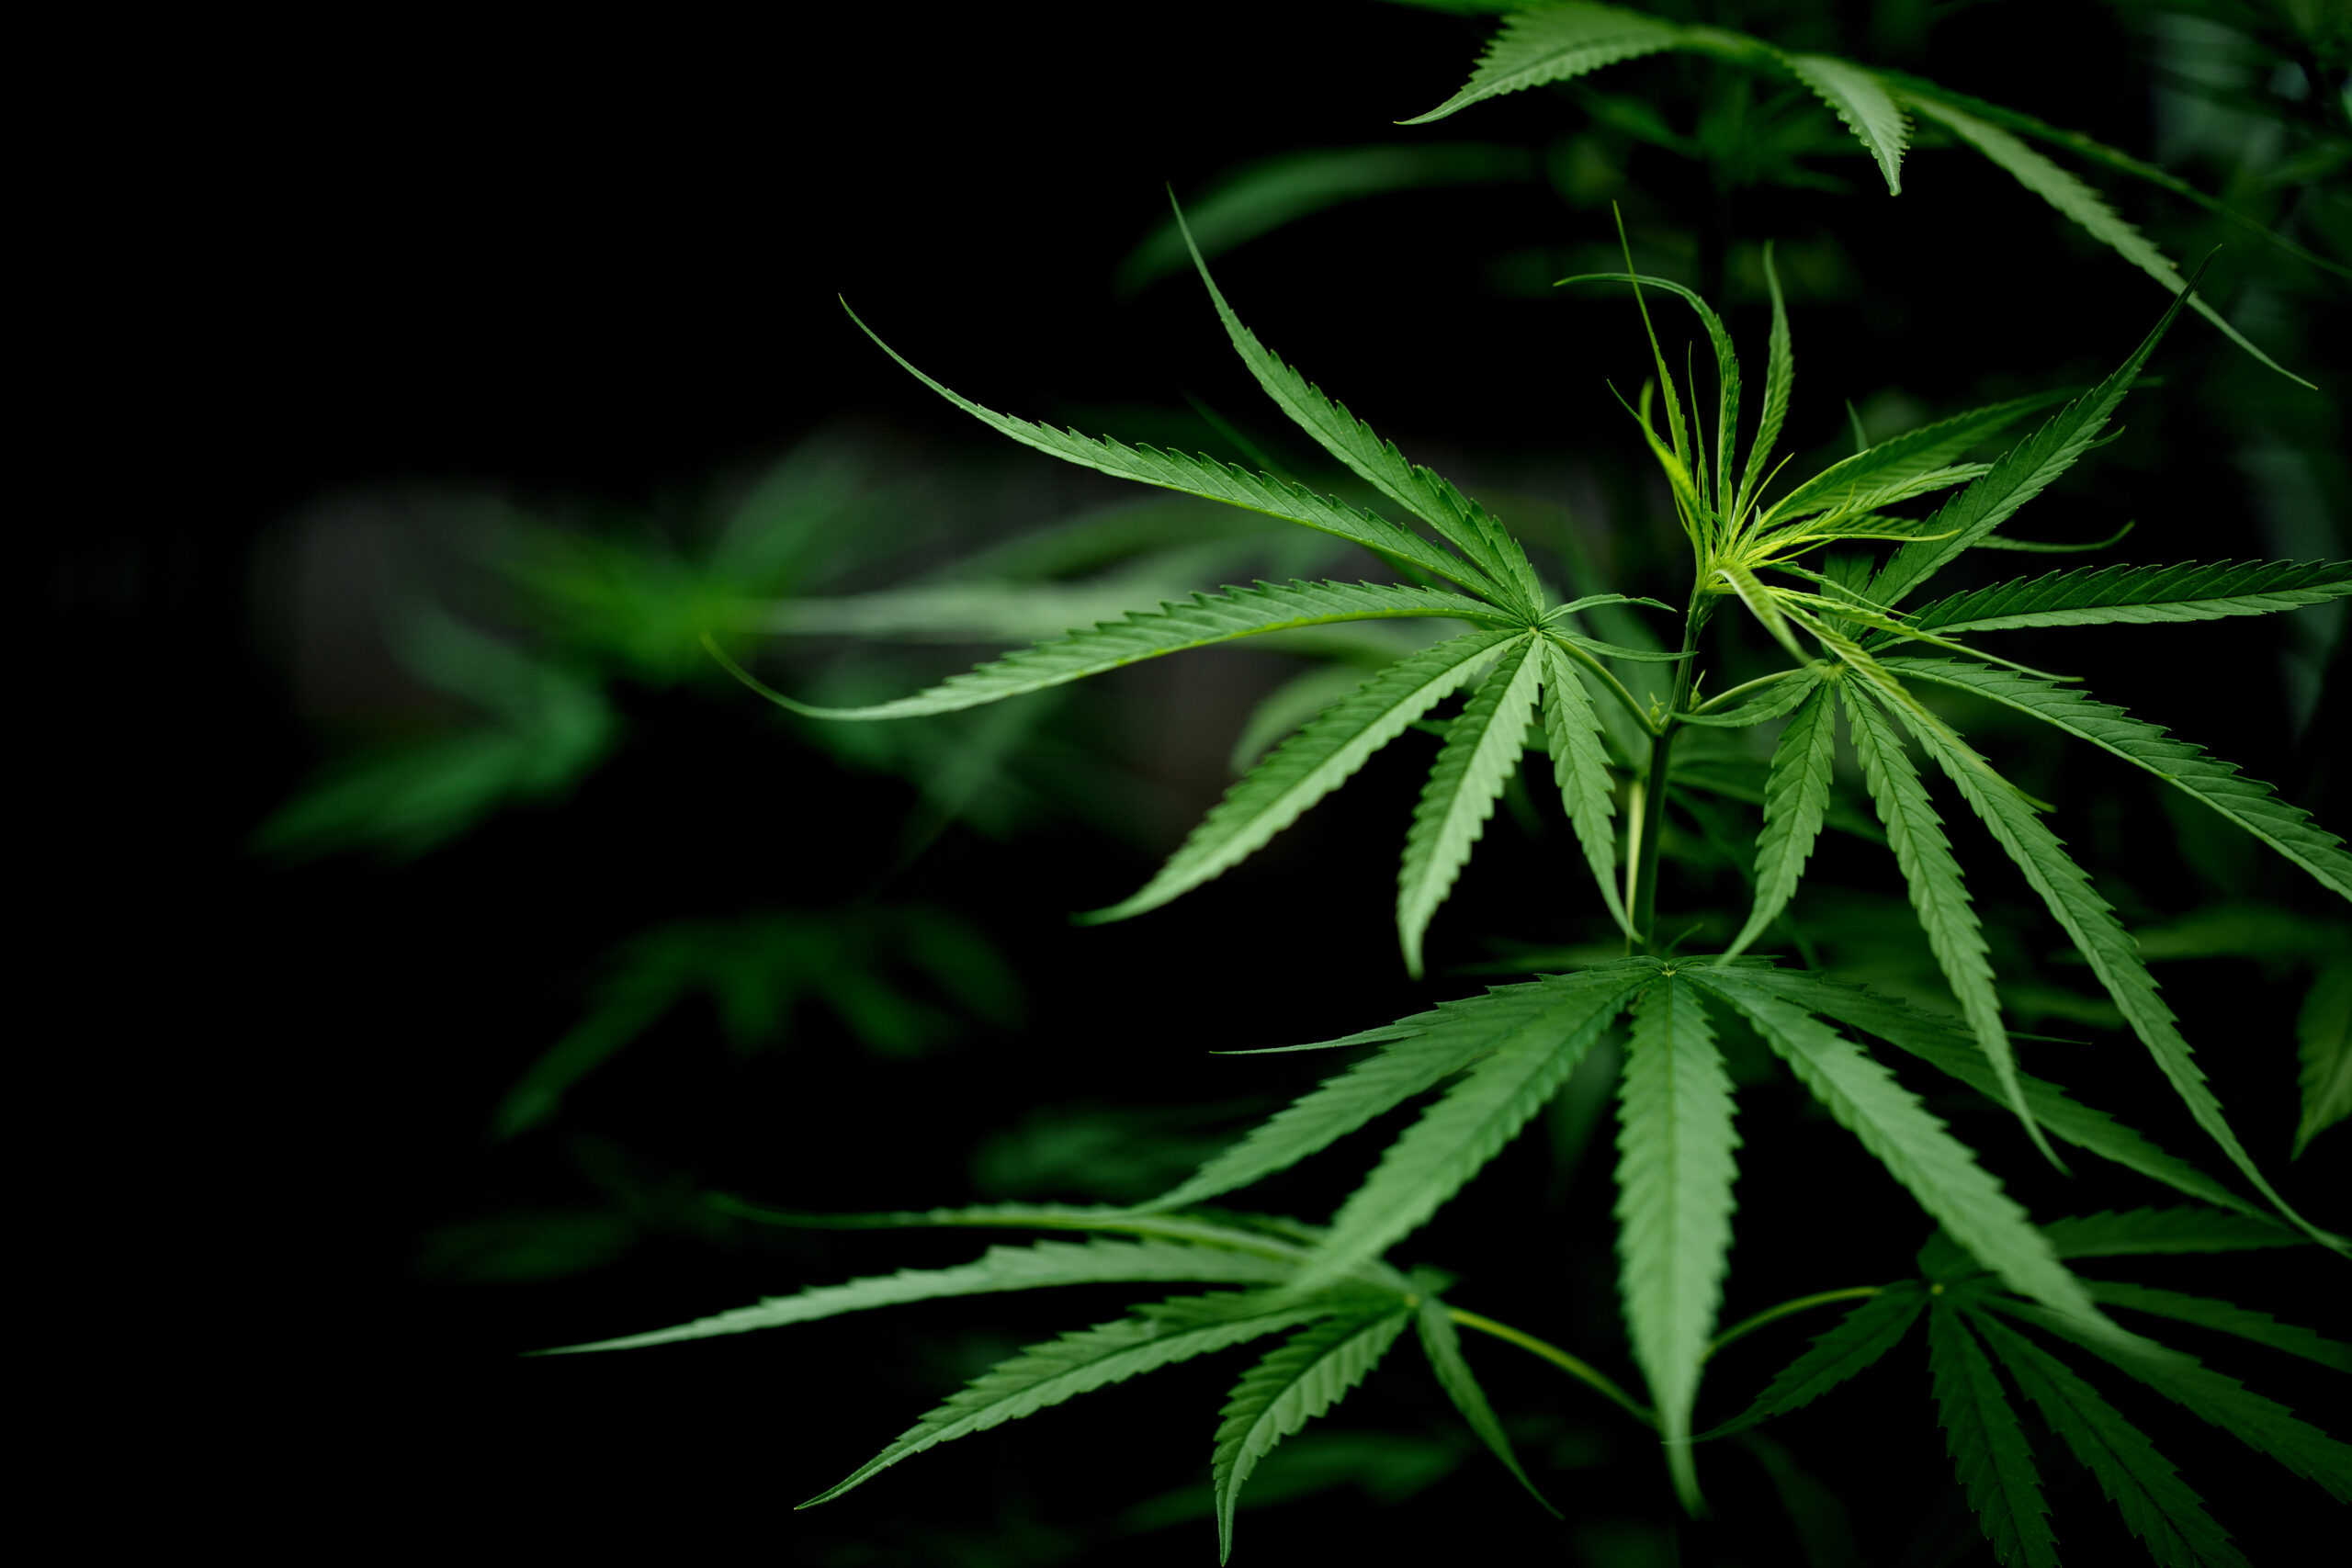 Uso medicinal da Cannabis: direito de todos, mas quem tem acesso?